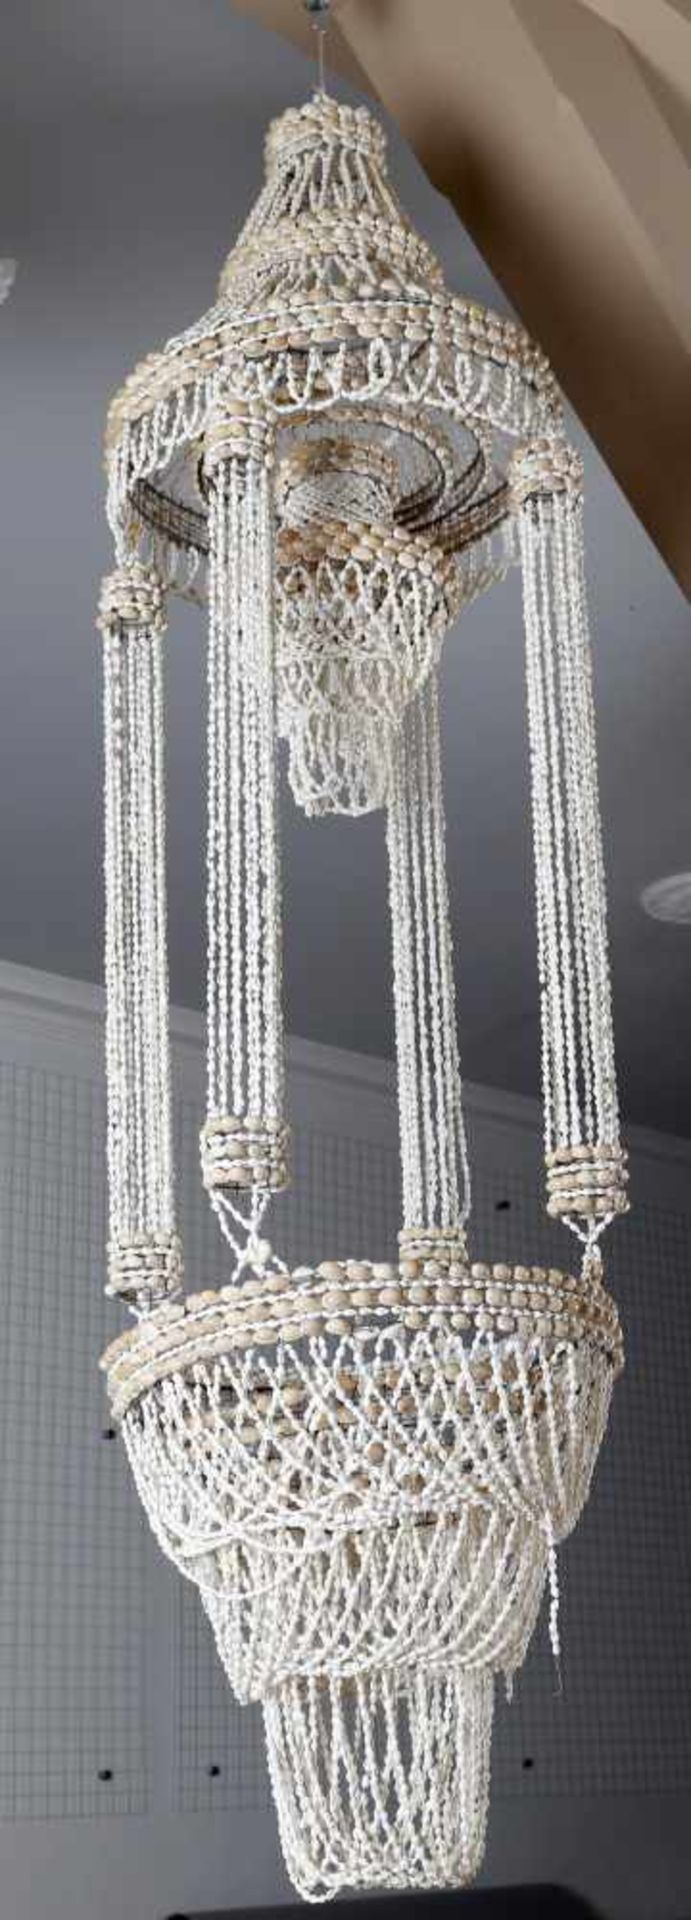 Große Deckenlampe aus Muscheln, Marokko, Mitte 20. Jh.aus Schnüren von Kaurimuscheln konstruierte